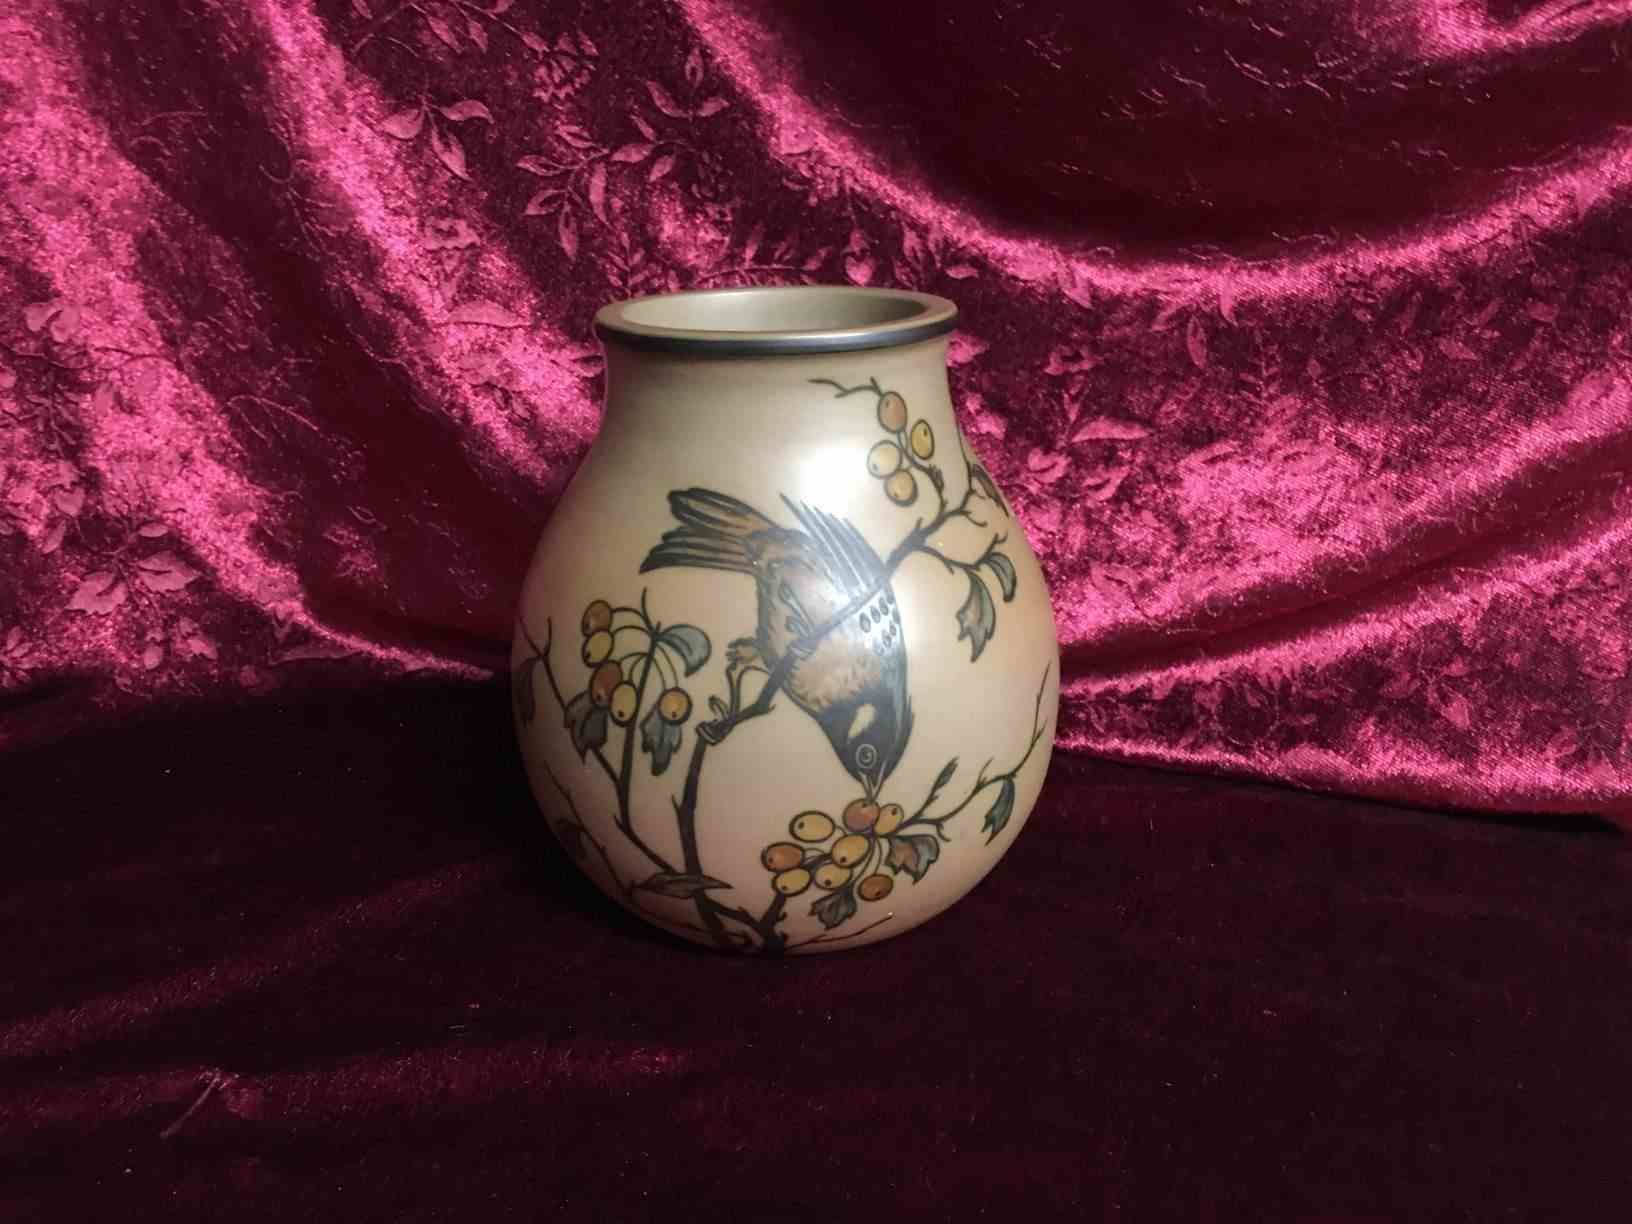 Hjorth - Vase 15 cm høj dekoreret med fugle. I perfekt stand. Produceret i 1920'erne og udtænkt af Johanne Hjorth (f. Tvede Bruhn 1879-1955). Dekorationerne er af Thora Hjorth (1875-1970), som er uddannet på malerskoler i København og på utallige studierejser, specielt til Tyskland. Pris: 350,- Kr.